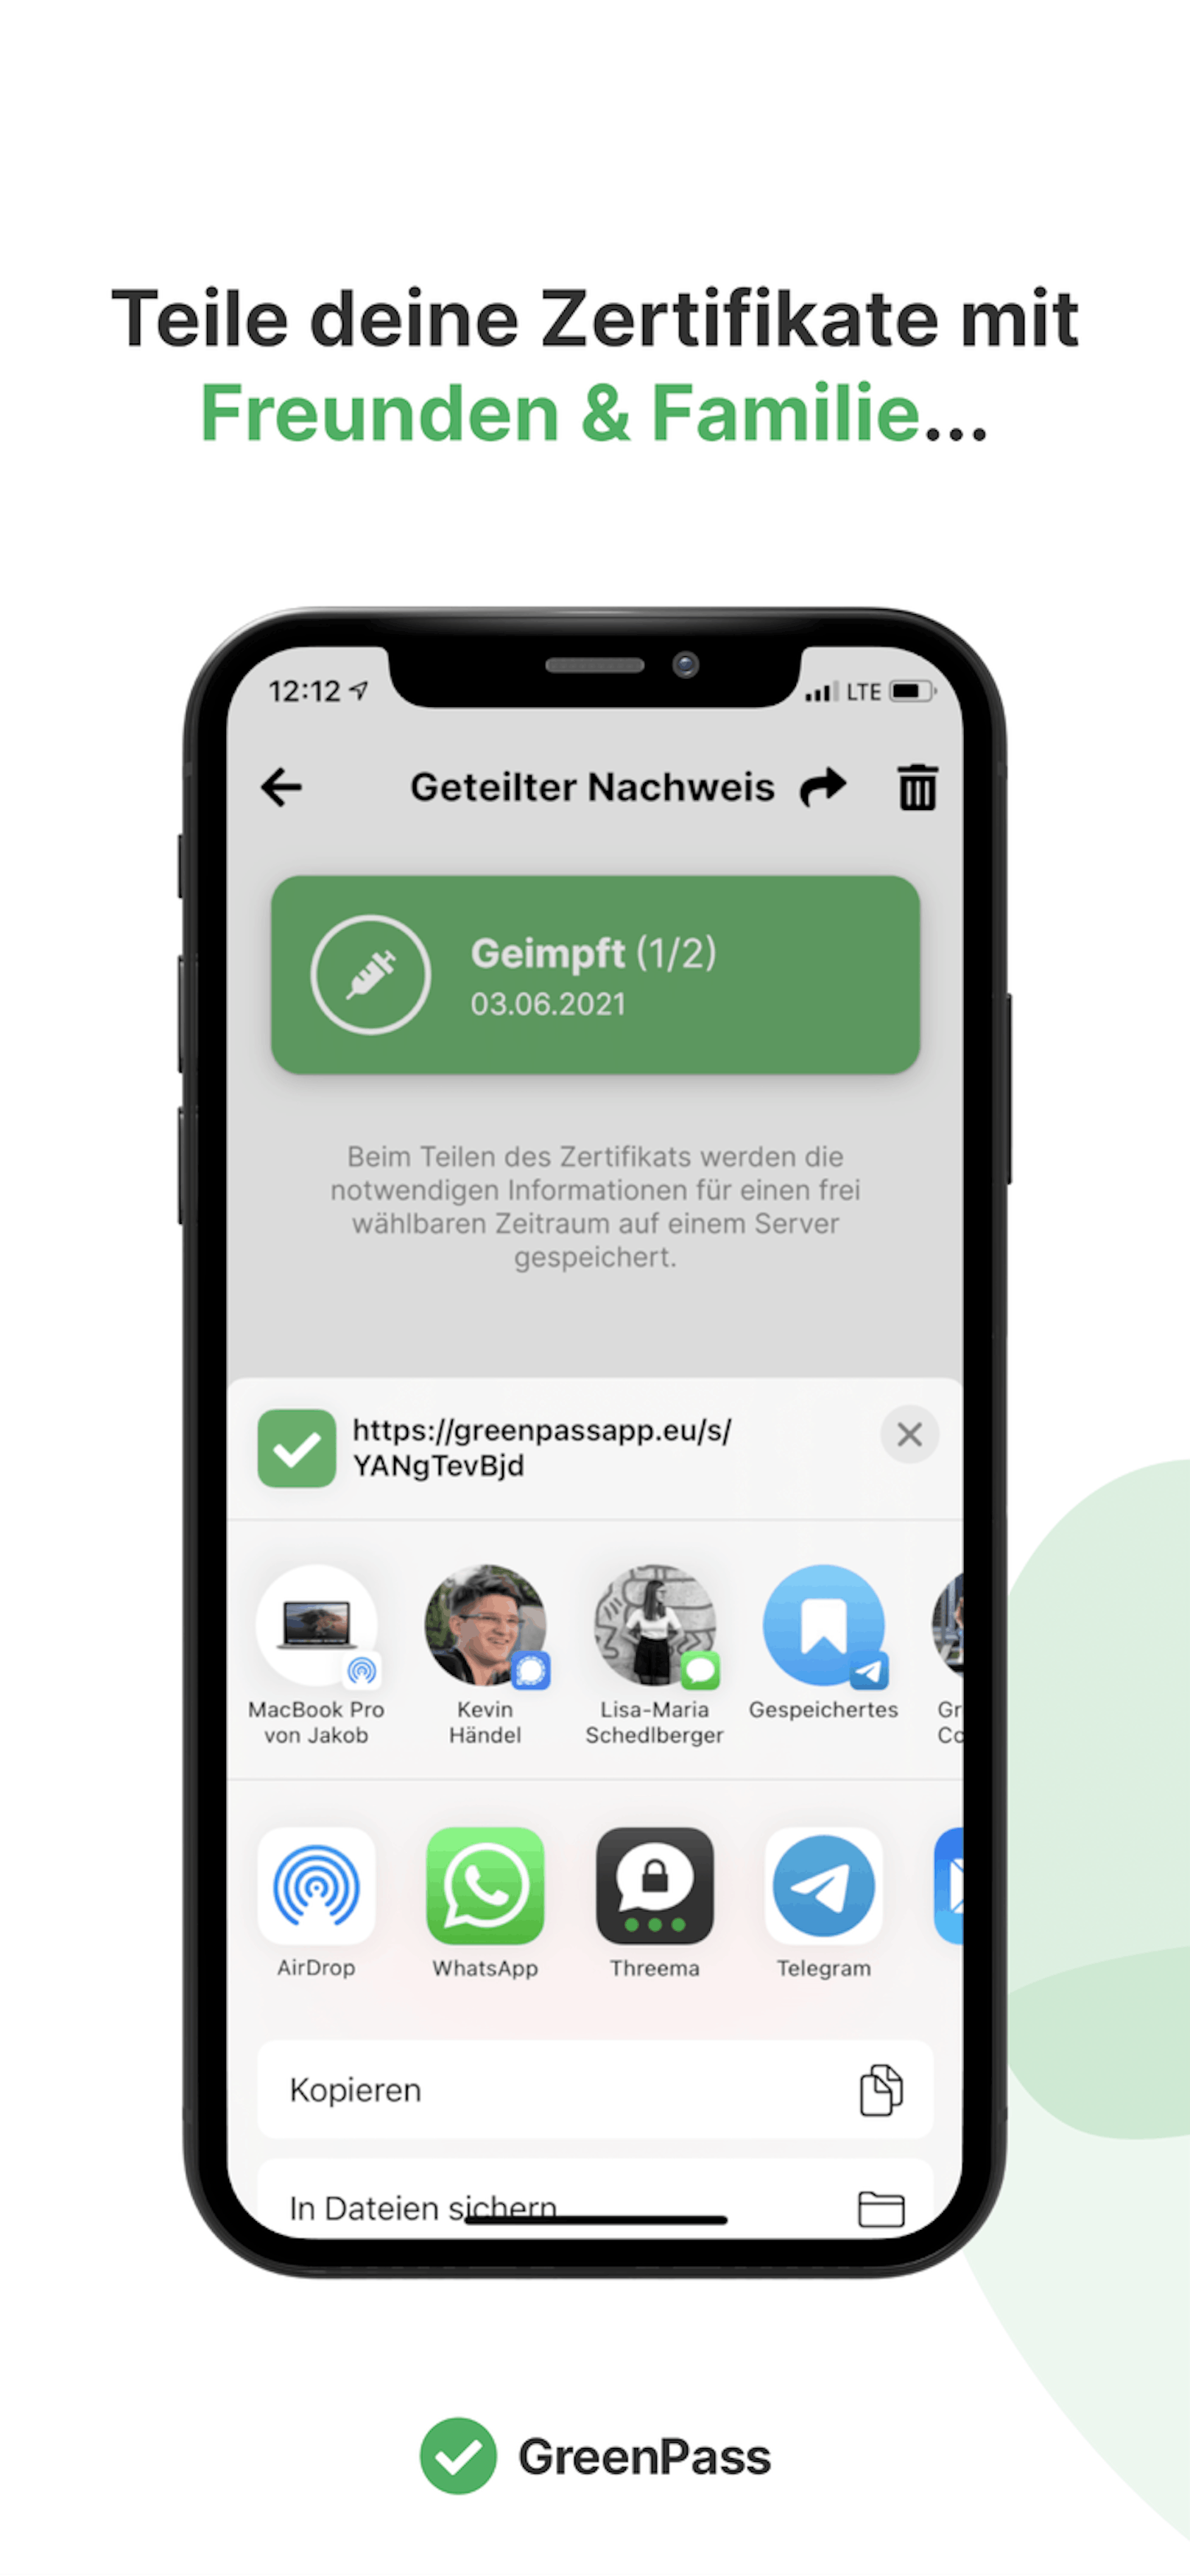 Ein Team der FH Hagenberg hat eine einfache App für den Grünen Pass entwickelt.